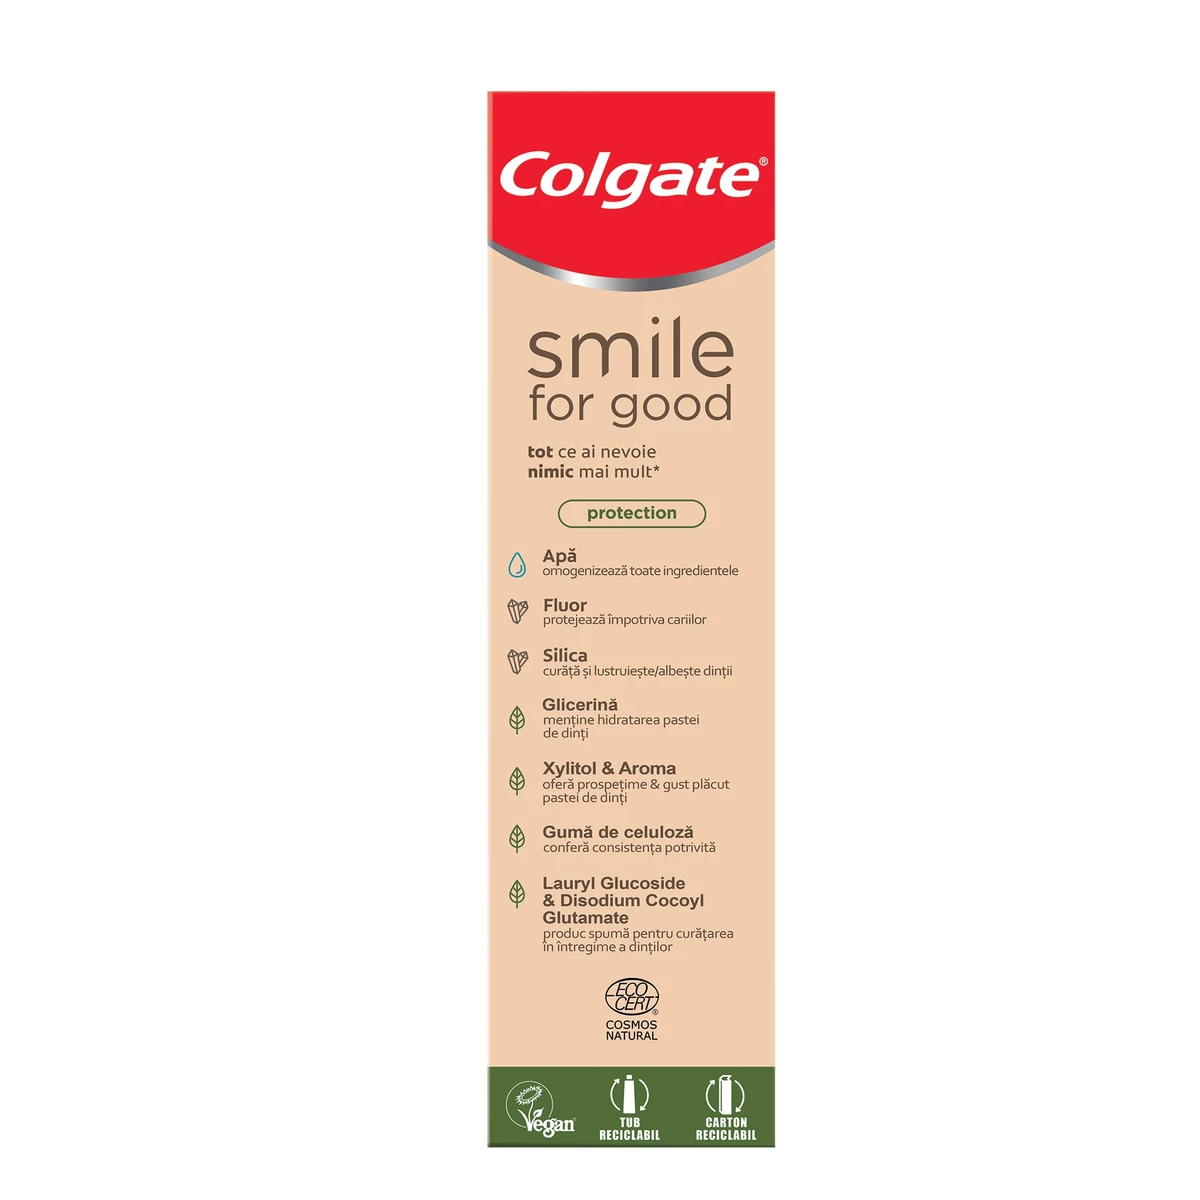 Colgate Smile for Good Protection fogkrém 75 ml